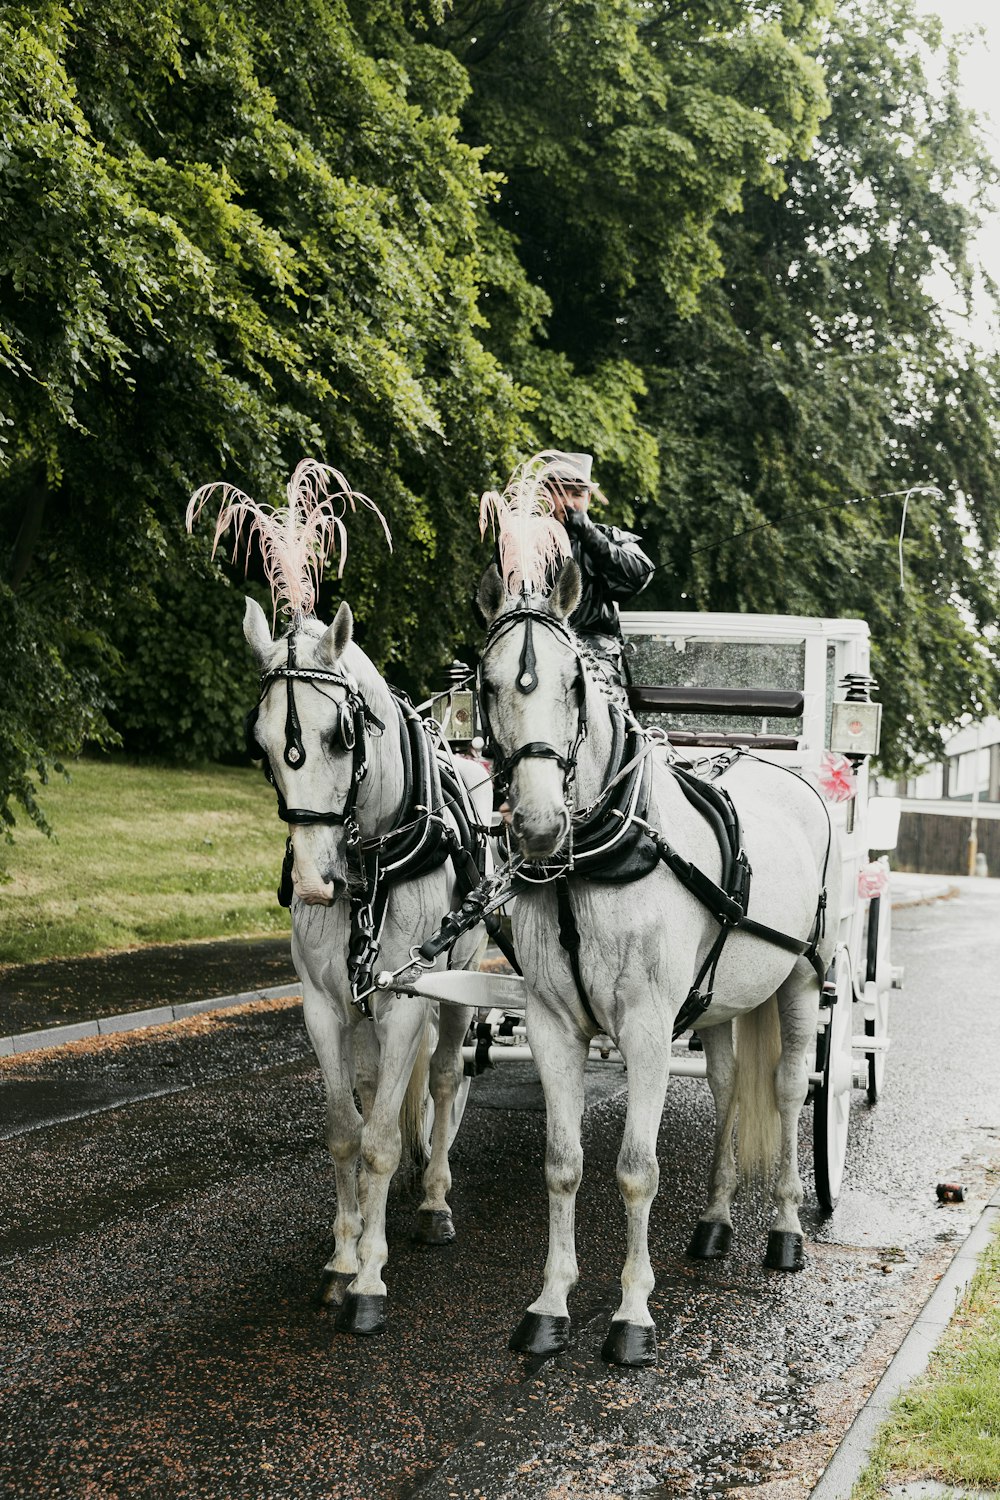 a couple of men riding a horse carriage